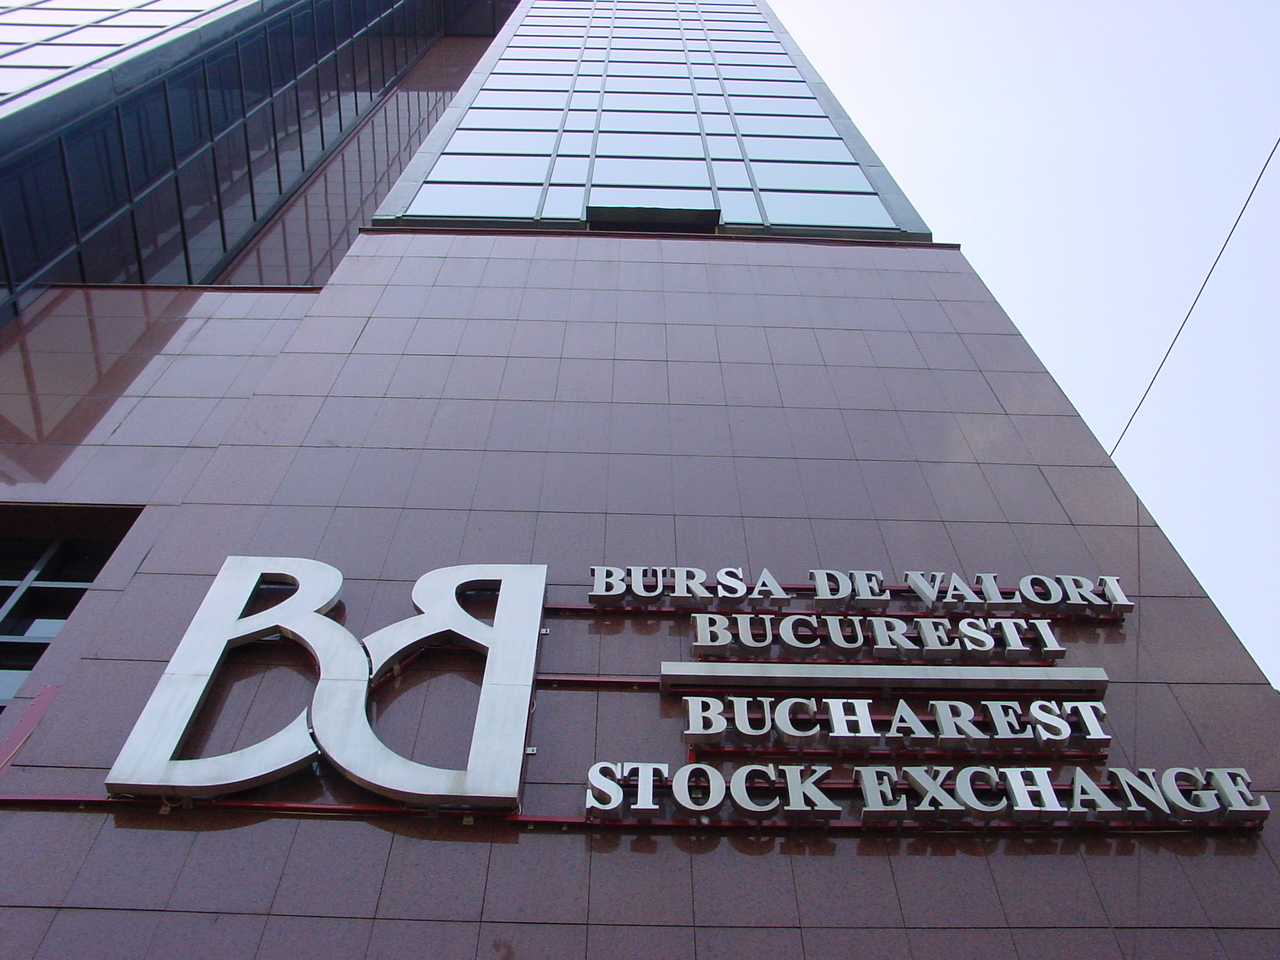 Capitalizarea tuturor companiilor listate la Bursa de Valori Bucureşti depăşeşte 300 miliarde lei